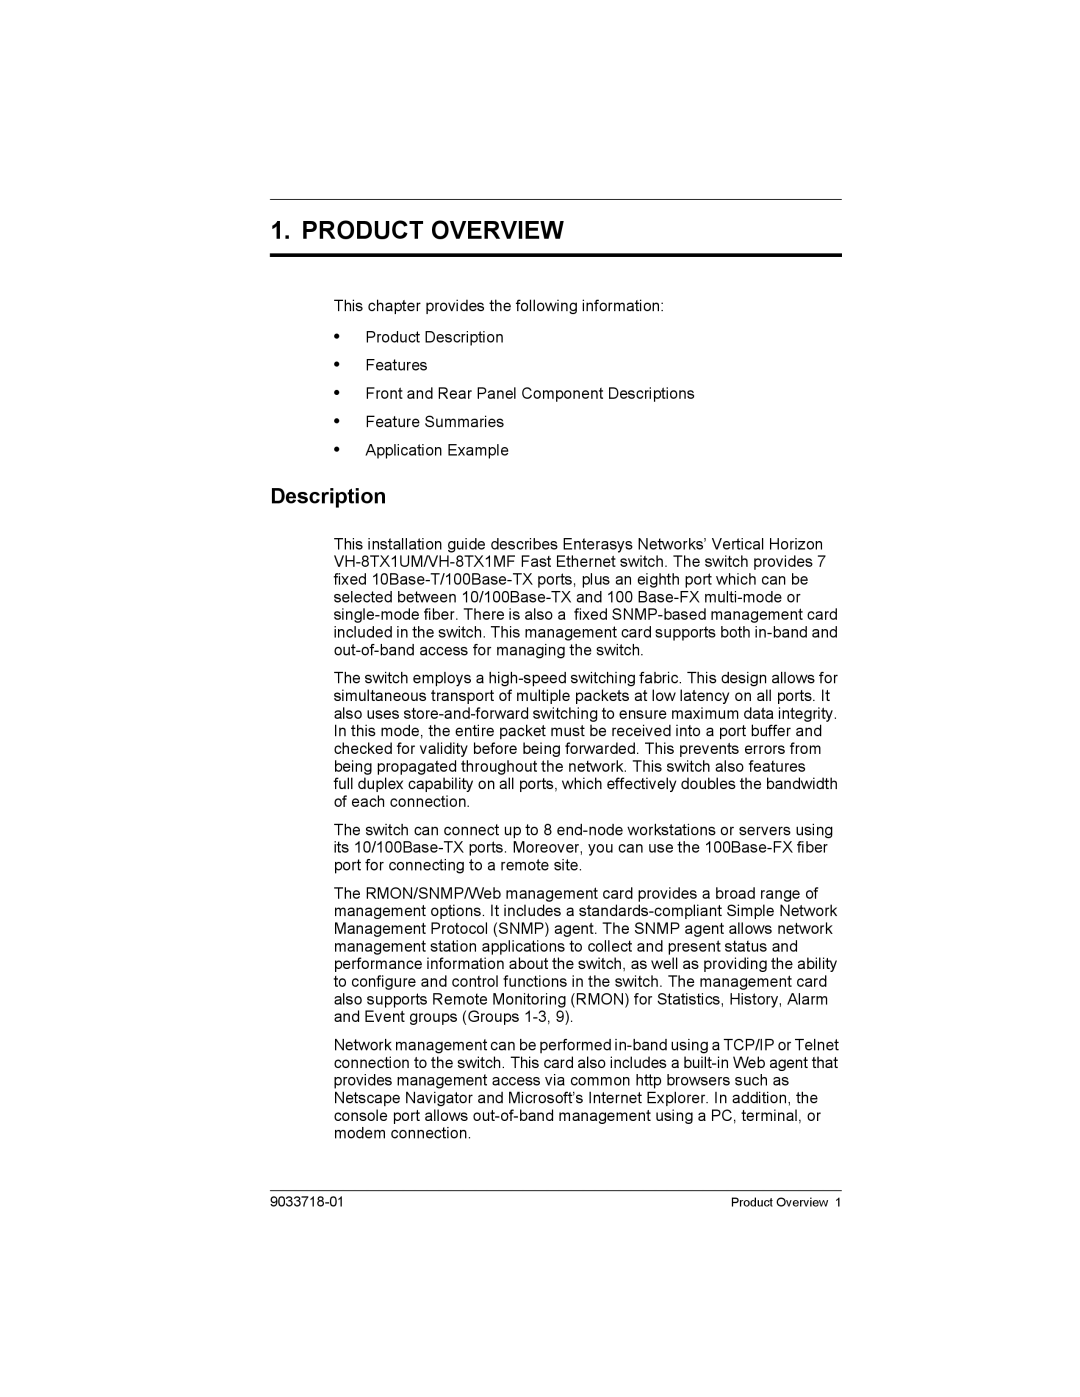 Enterasys Networks VH-8TX1UM, VH-8TX1MF manual Product Overview, Description 